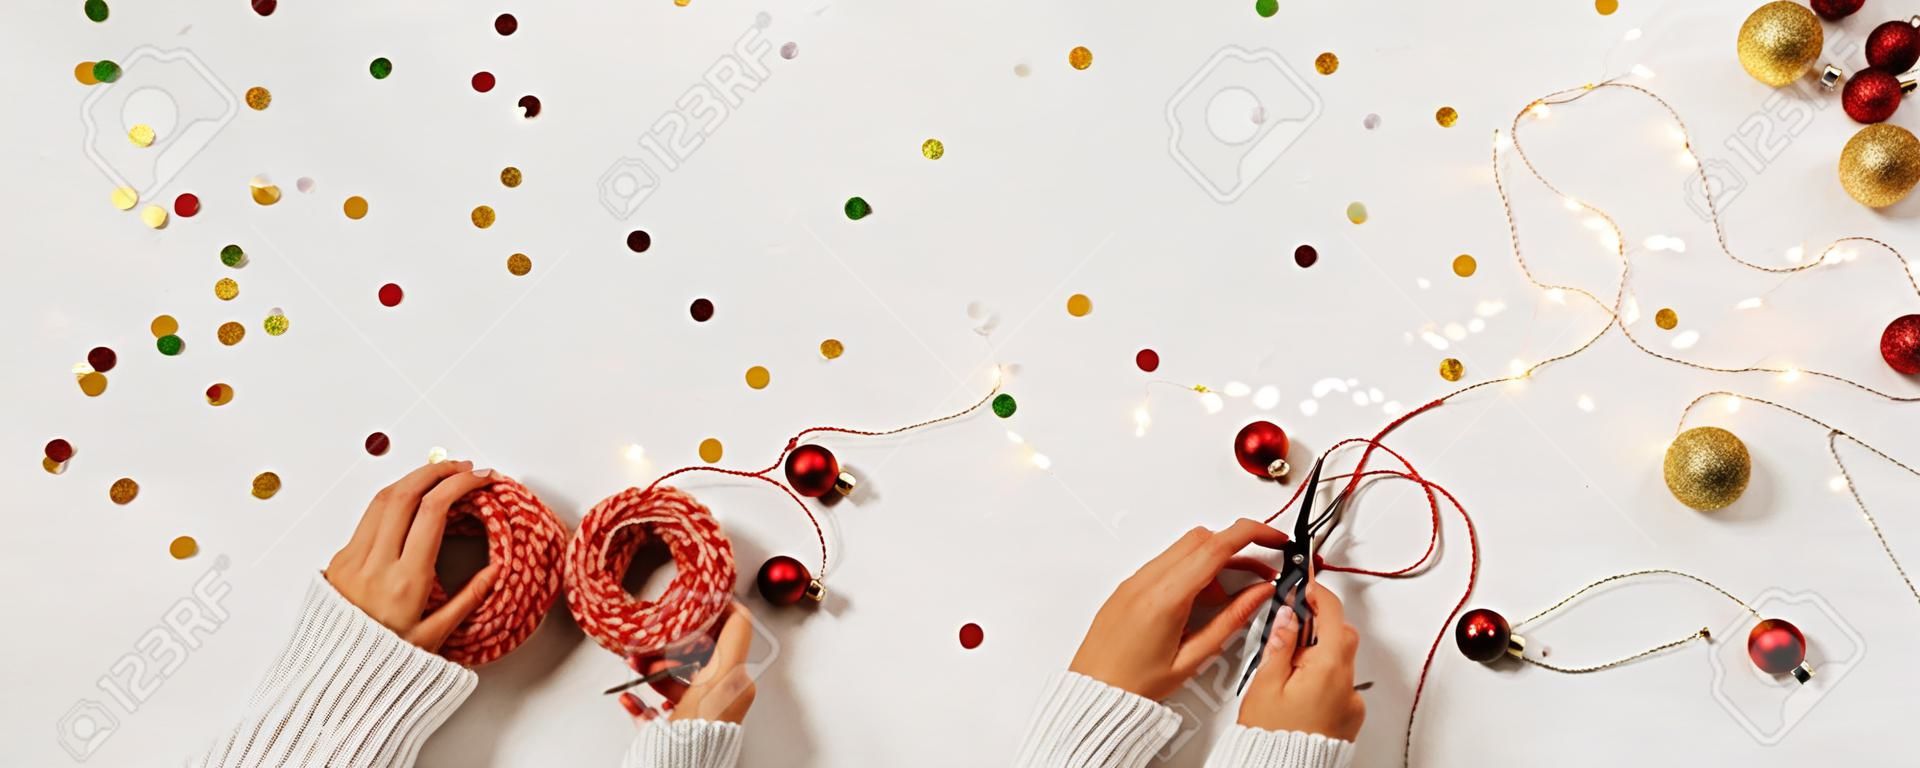 Le mani delle donne in un maglione confezionano una confezione regalo per il nuovo anno. Layout creativo di Natale su sfondo bianco con coriandoli e spazio per il testo.